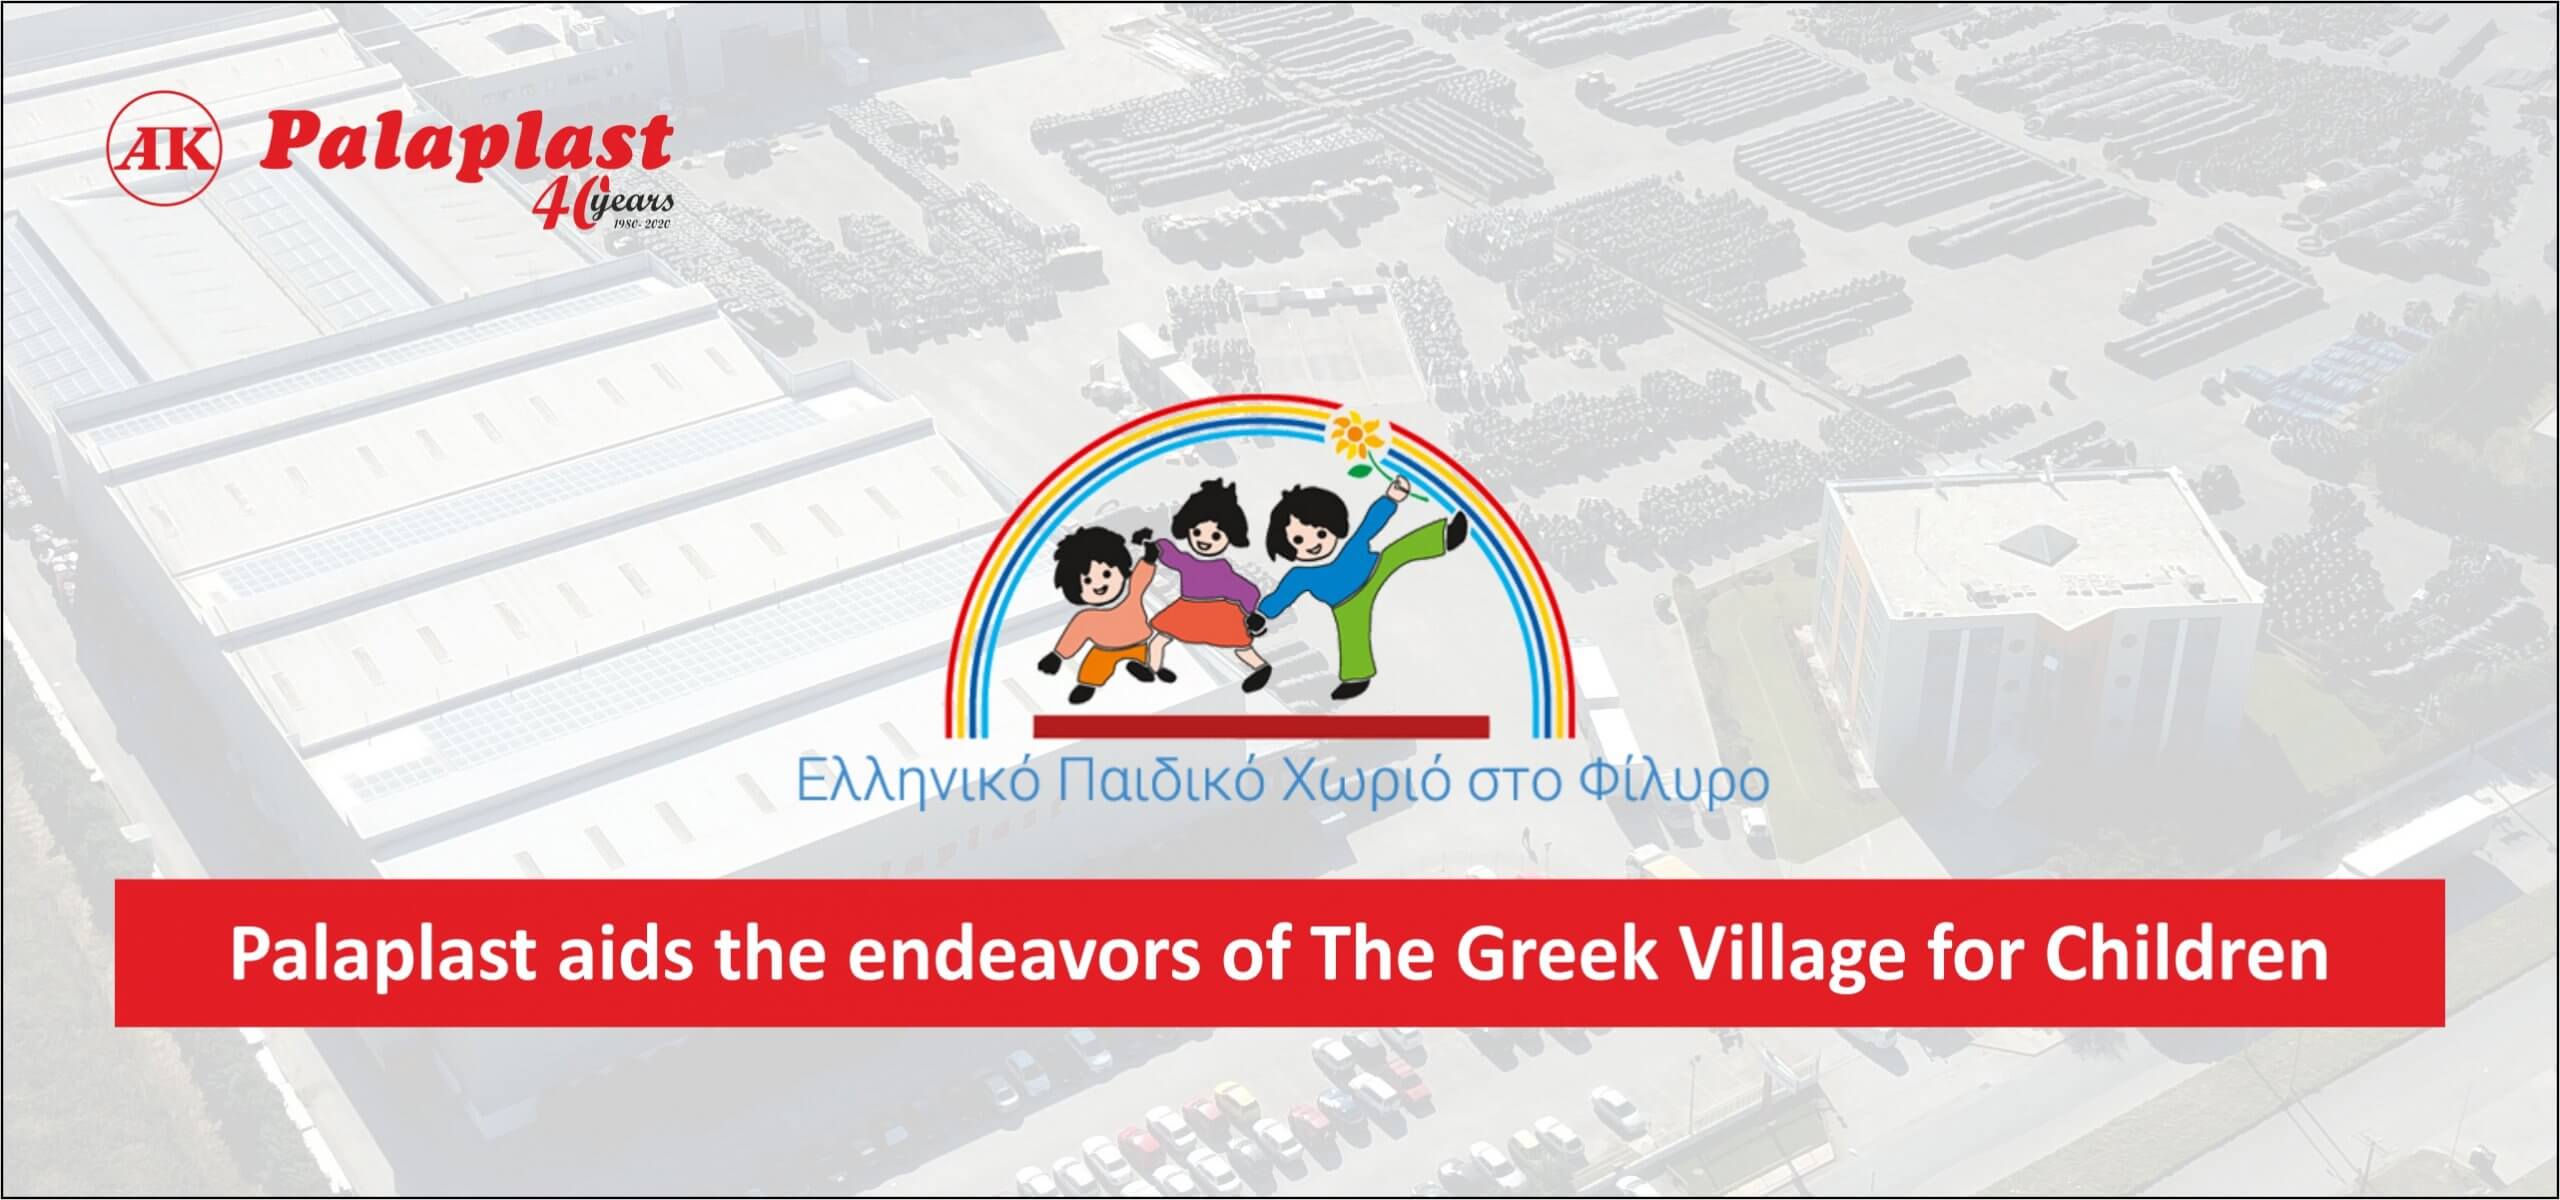 The Greek Village for Children